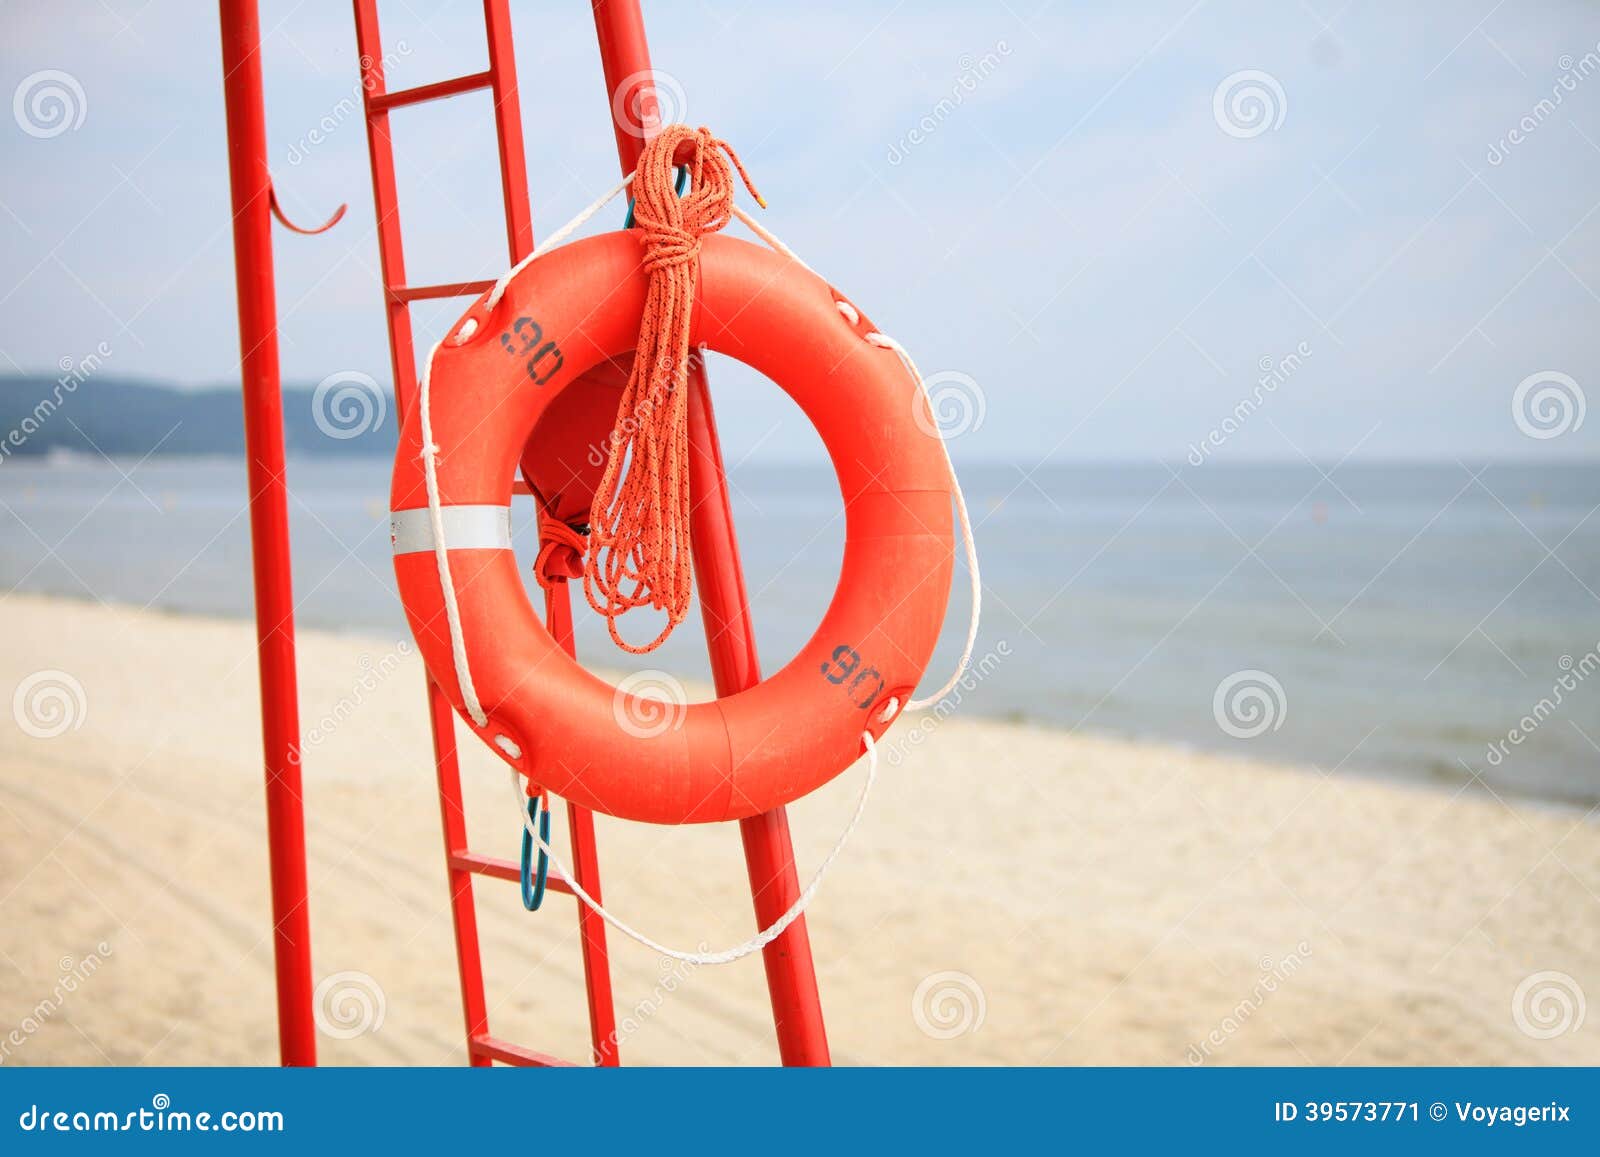 Пляжный спасатель. Спасательный инвентарь на пляже. Спасатель на пляже. Спасательный круг. Став спасательный круг